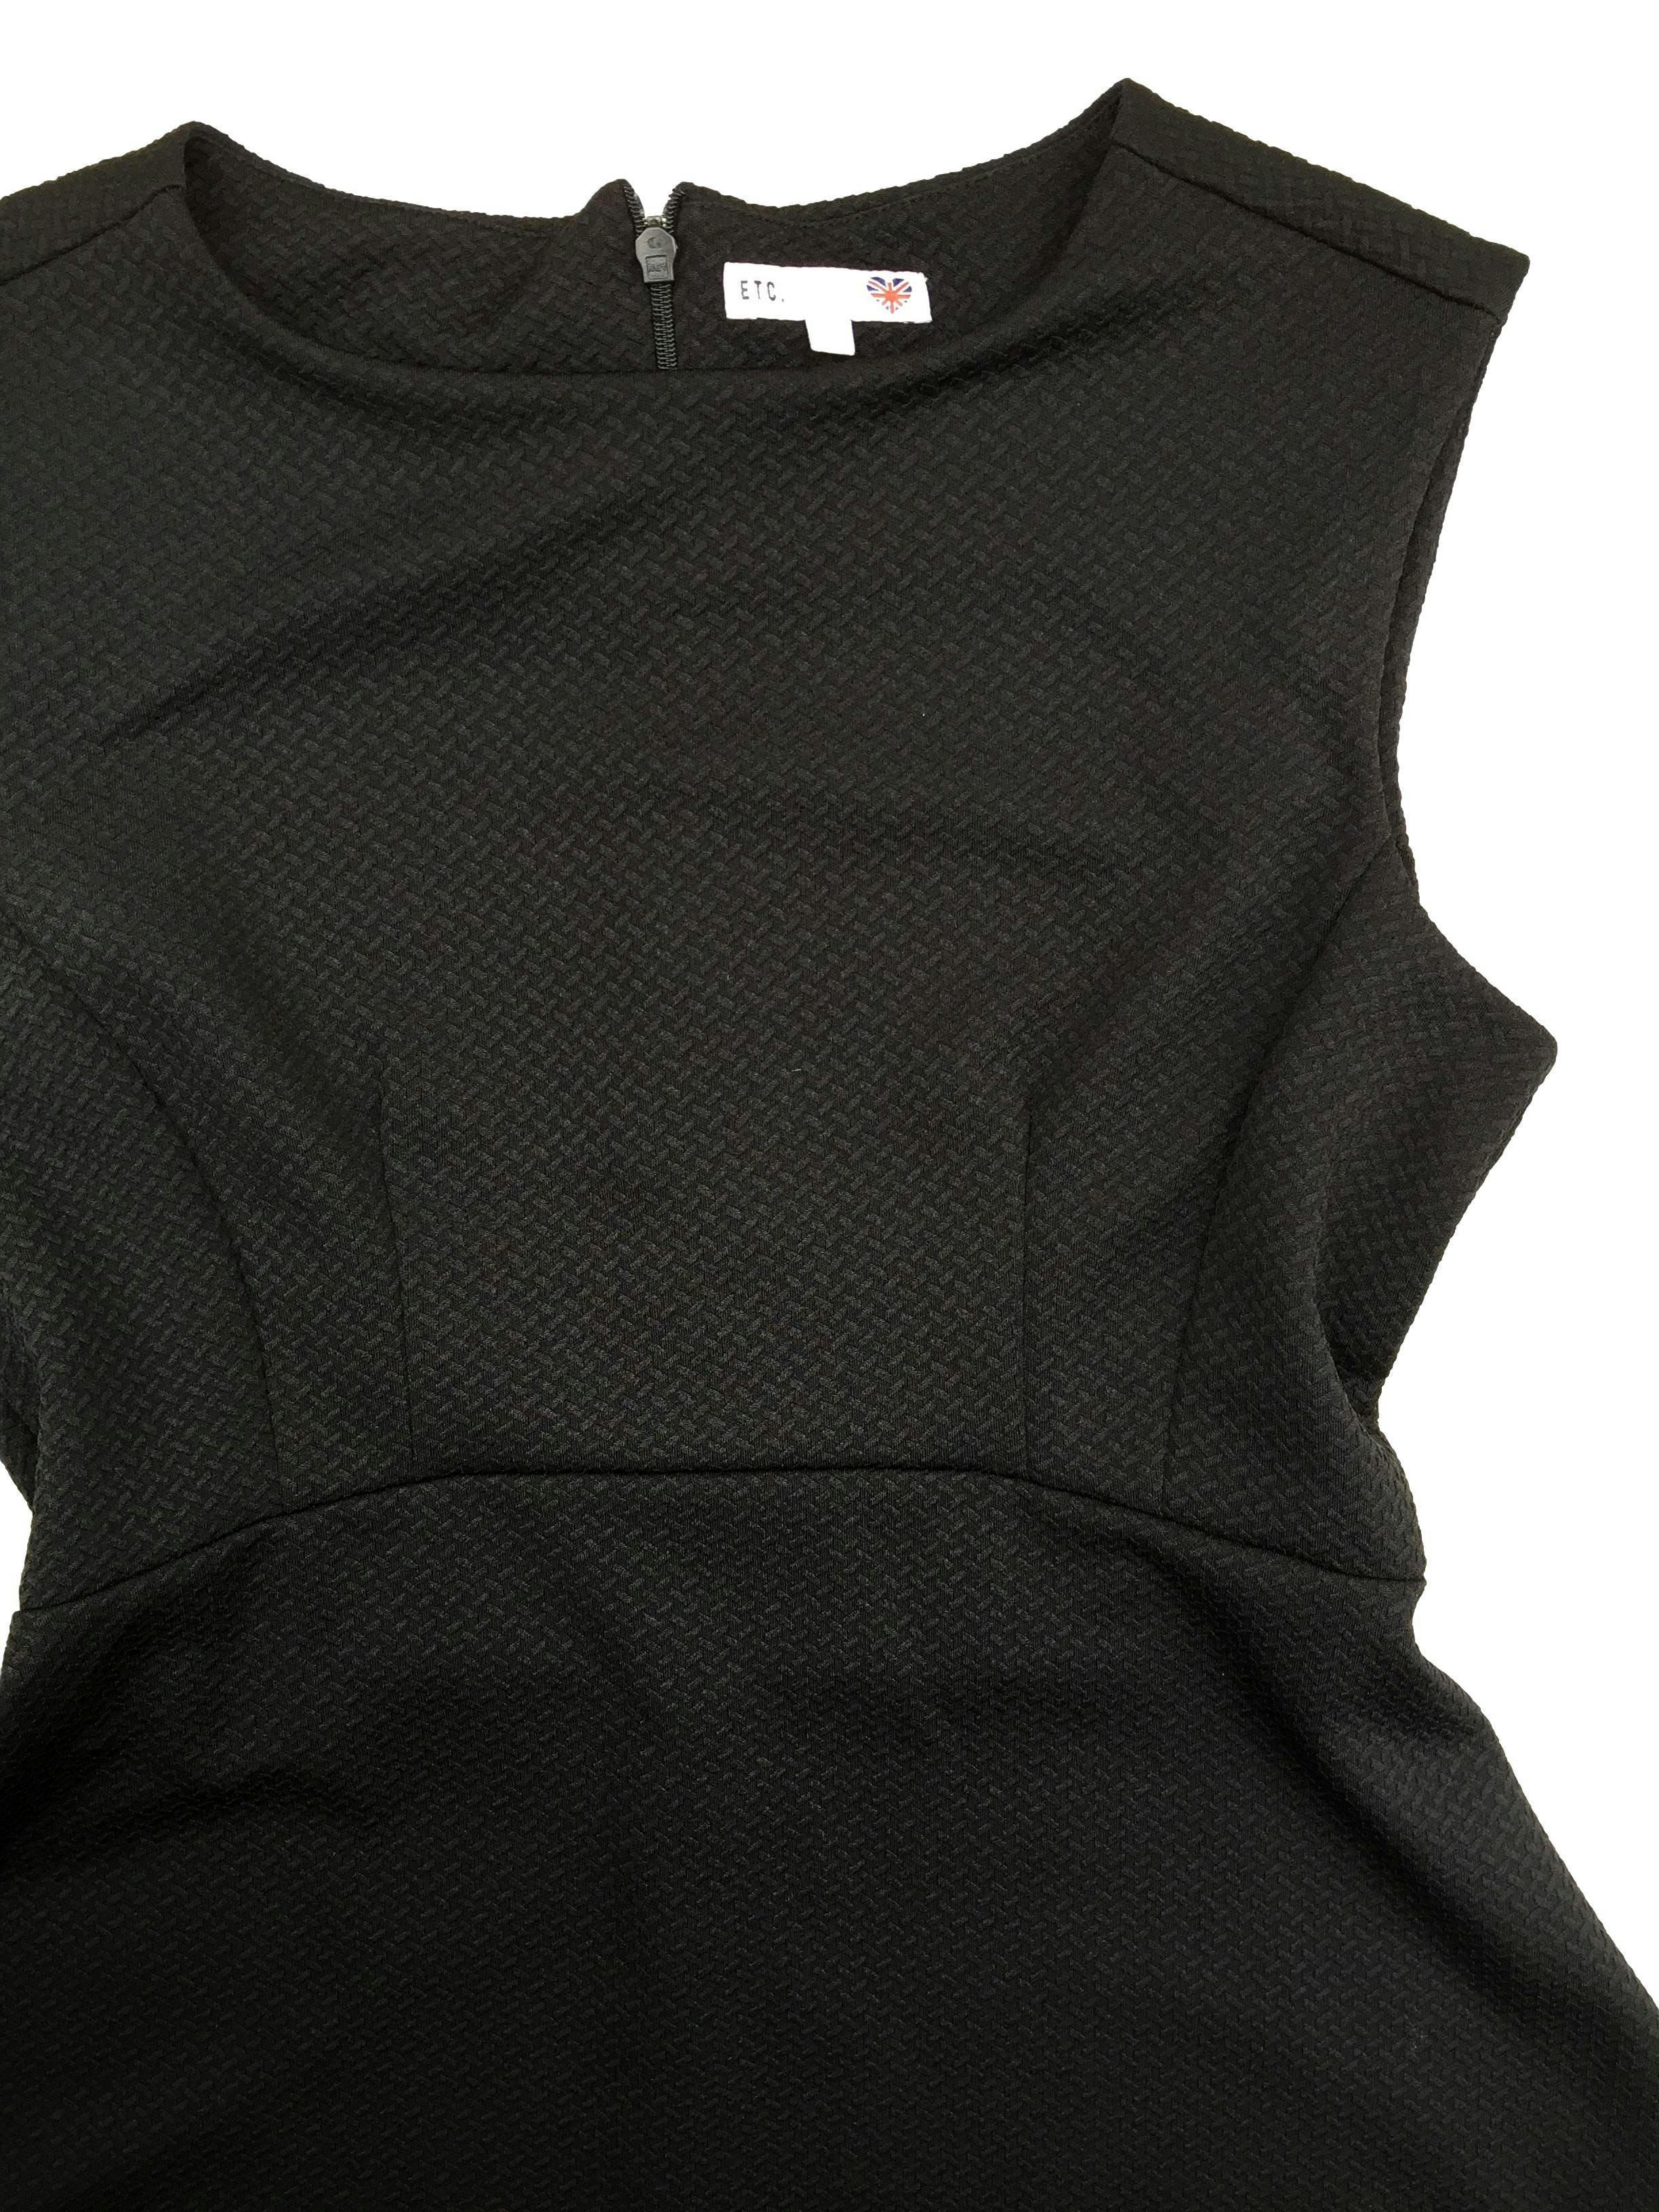 Vestido negro Etc con textura con falda semicampana, cierre posterior. Busto 96 cm, Largo 82 cm